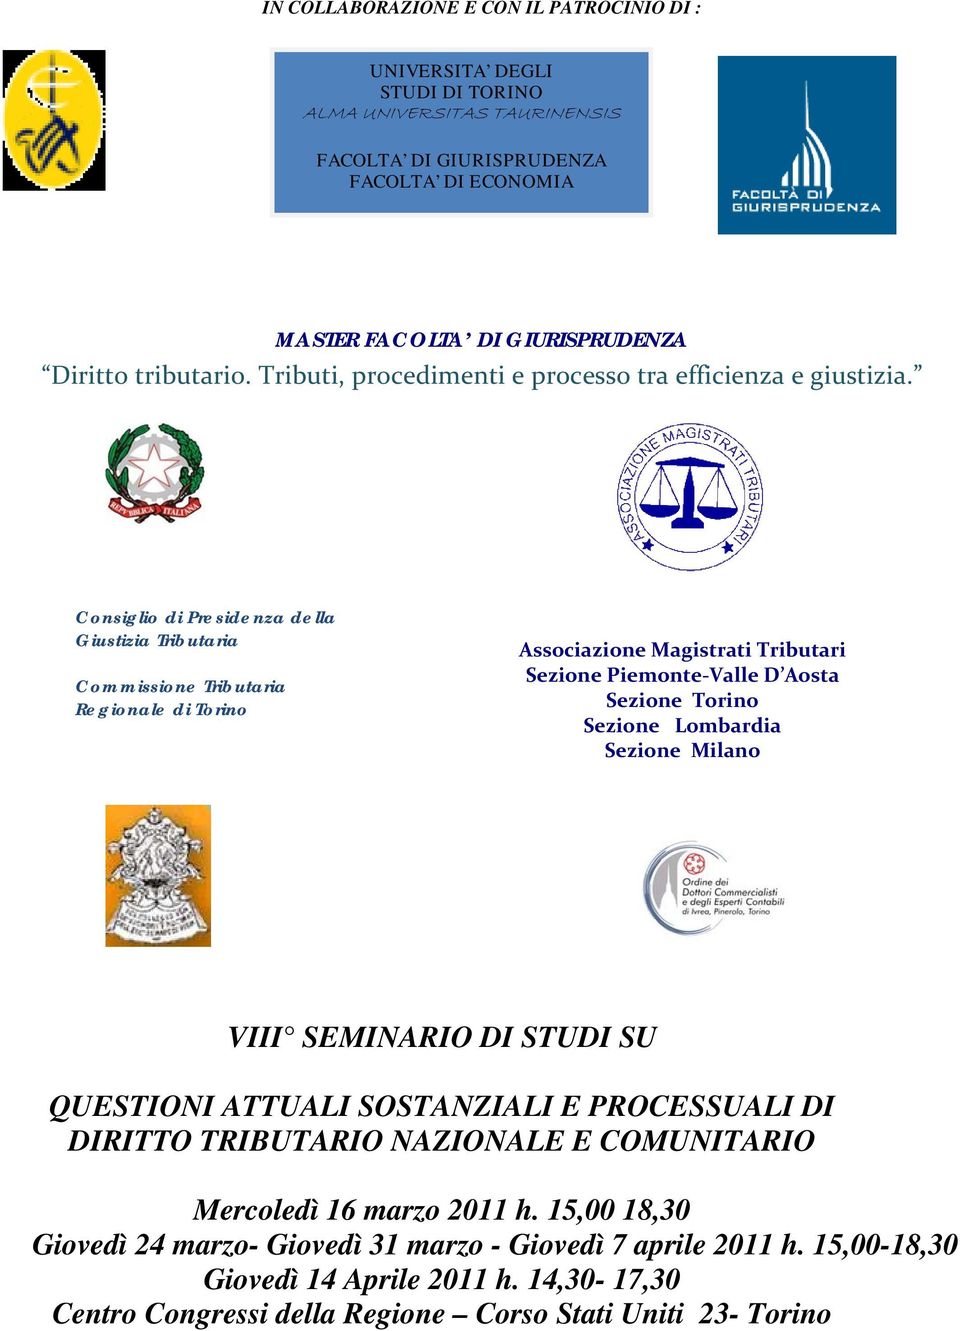 Consiglio di Presidenza della Giustizia Tributaria Commissione Tributaria Regionale di Torino Associazione Magistrati Tributari Sezione Piemonte Valle D Aosta Sezione Torino Sezione Lombardia Sezione